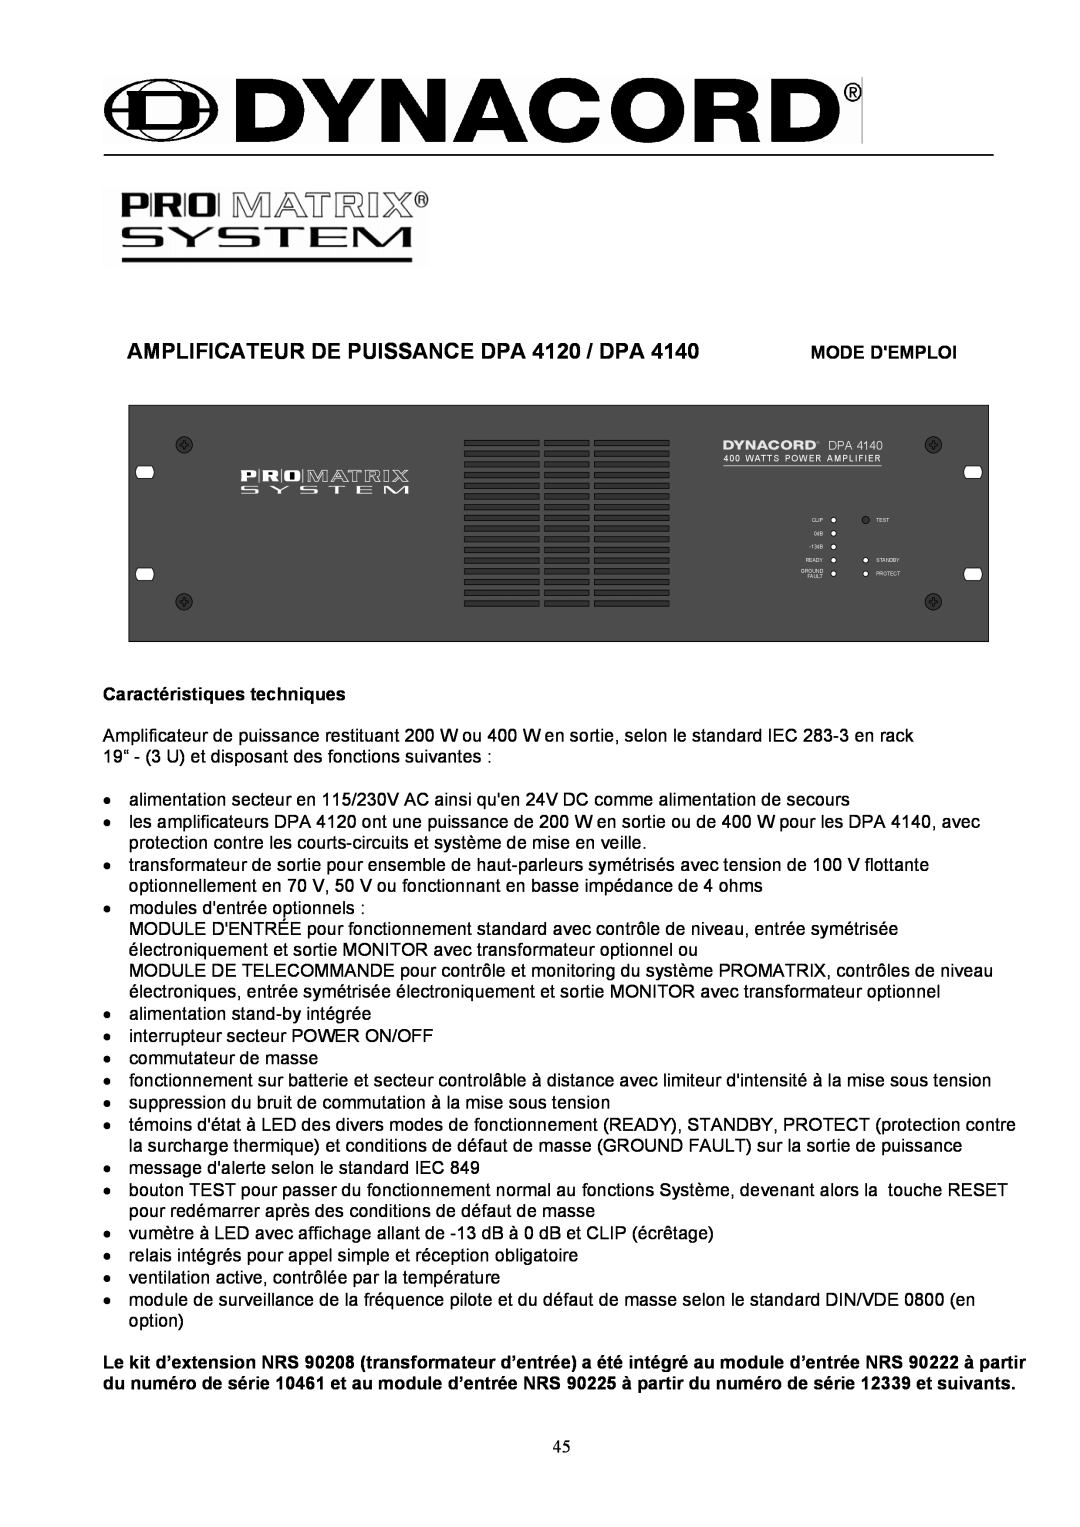 Dynacord DPA 4140 owner manual AMPLIFICATEUR DE PUISSANCE DPA 4120 / DPA, Mode Demploi, Caractéristiques techniques 